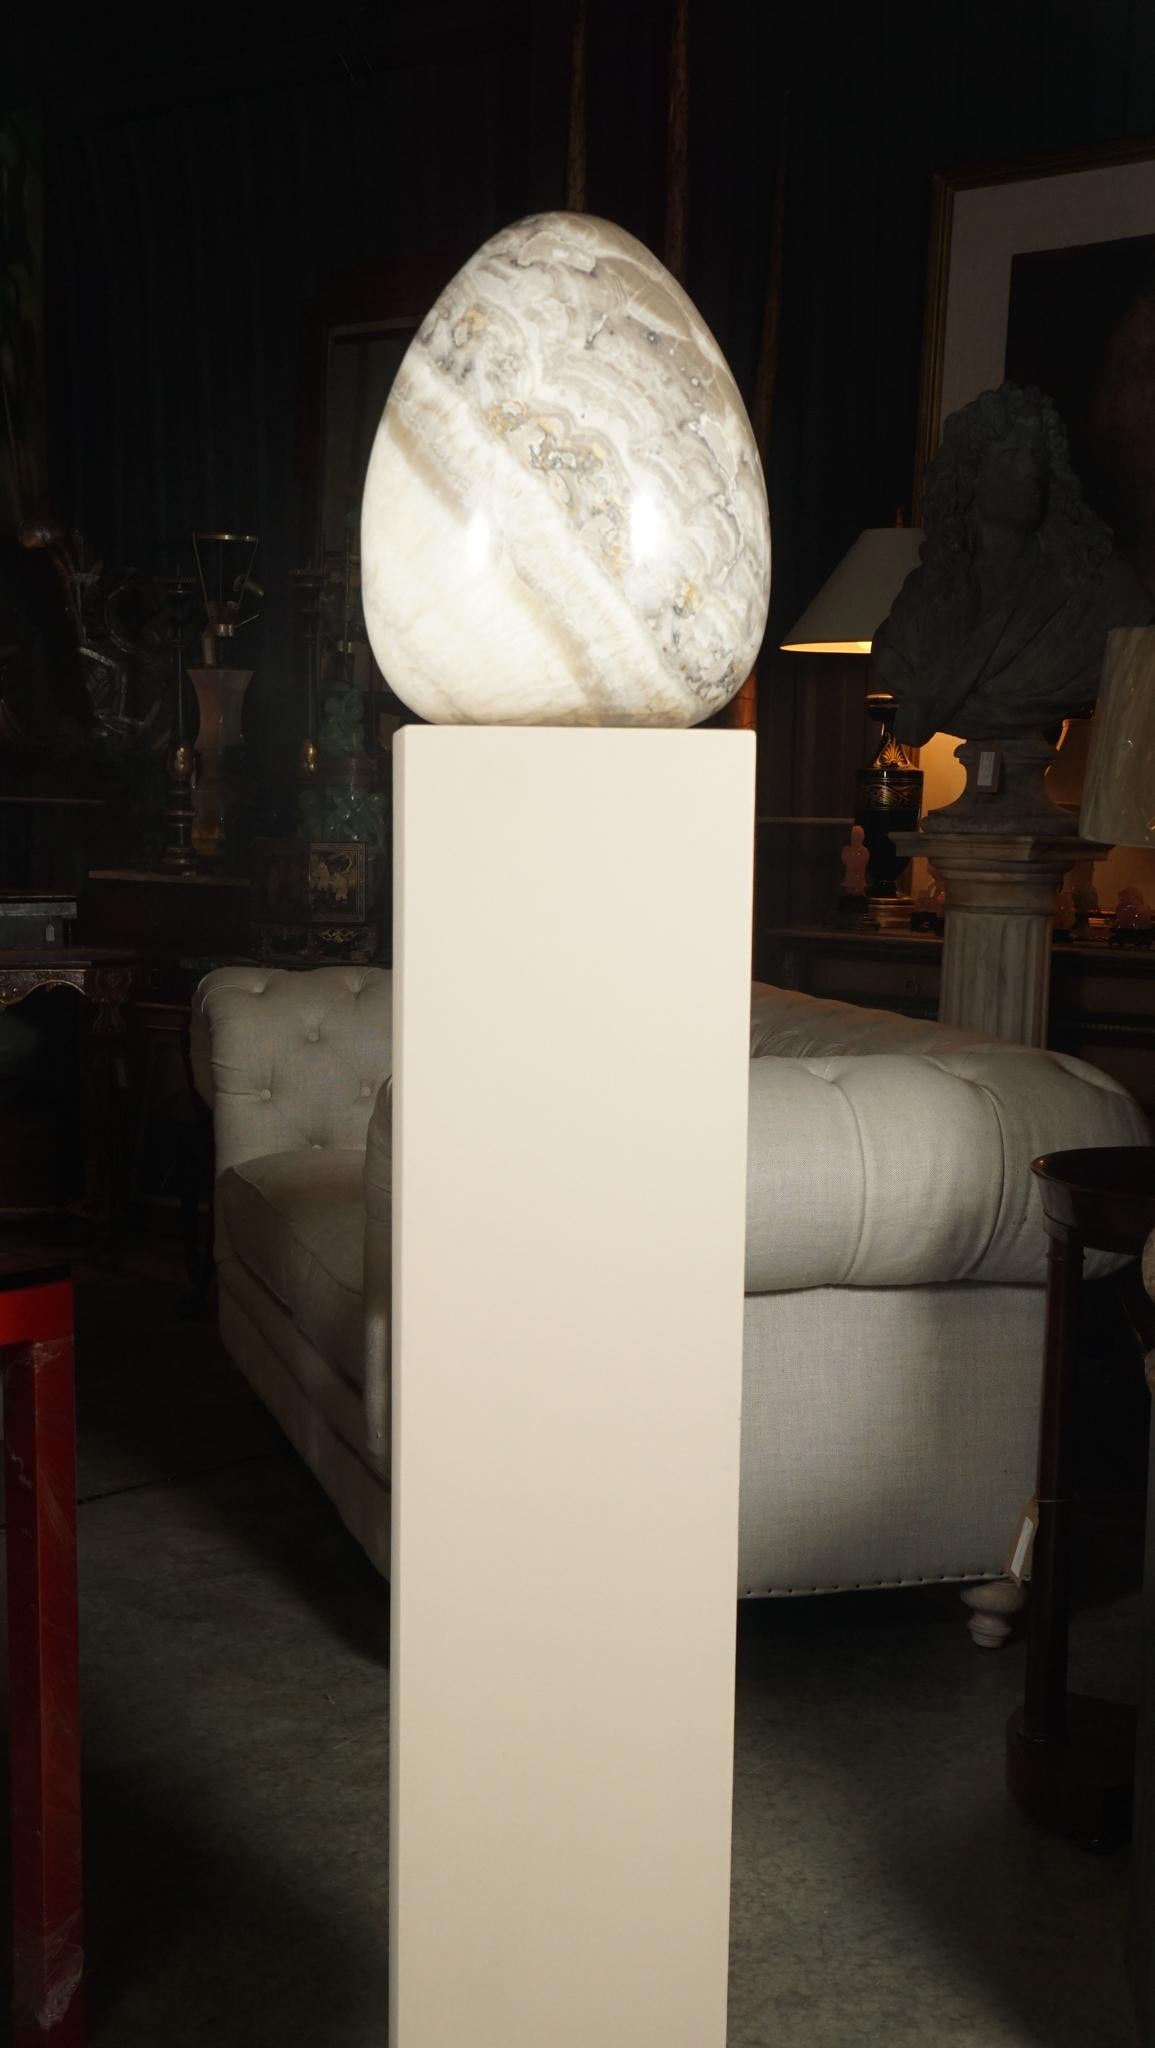 Sculpté dans un seul bloc d'onyx rare, ce grand œuf sculpté repose sur un piédestal électrifié qui crée une lumière interne pour l'œuf, lui donnant une forme géométrique lumineuse. La lumière éclaire le matériau, ce qui permet au spectateur de voir